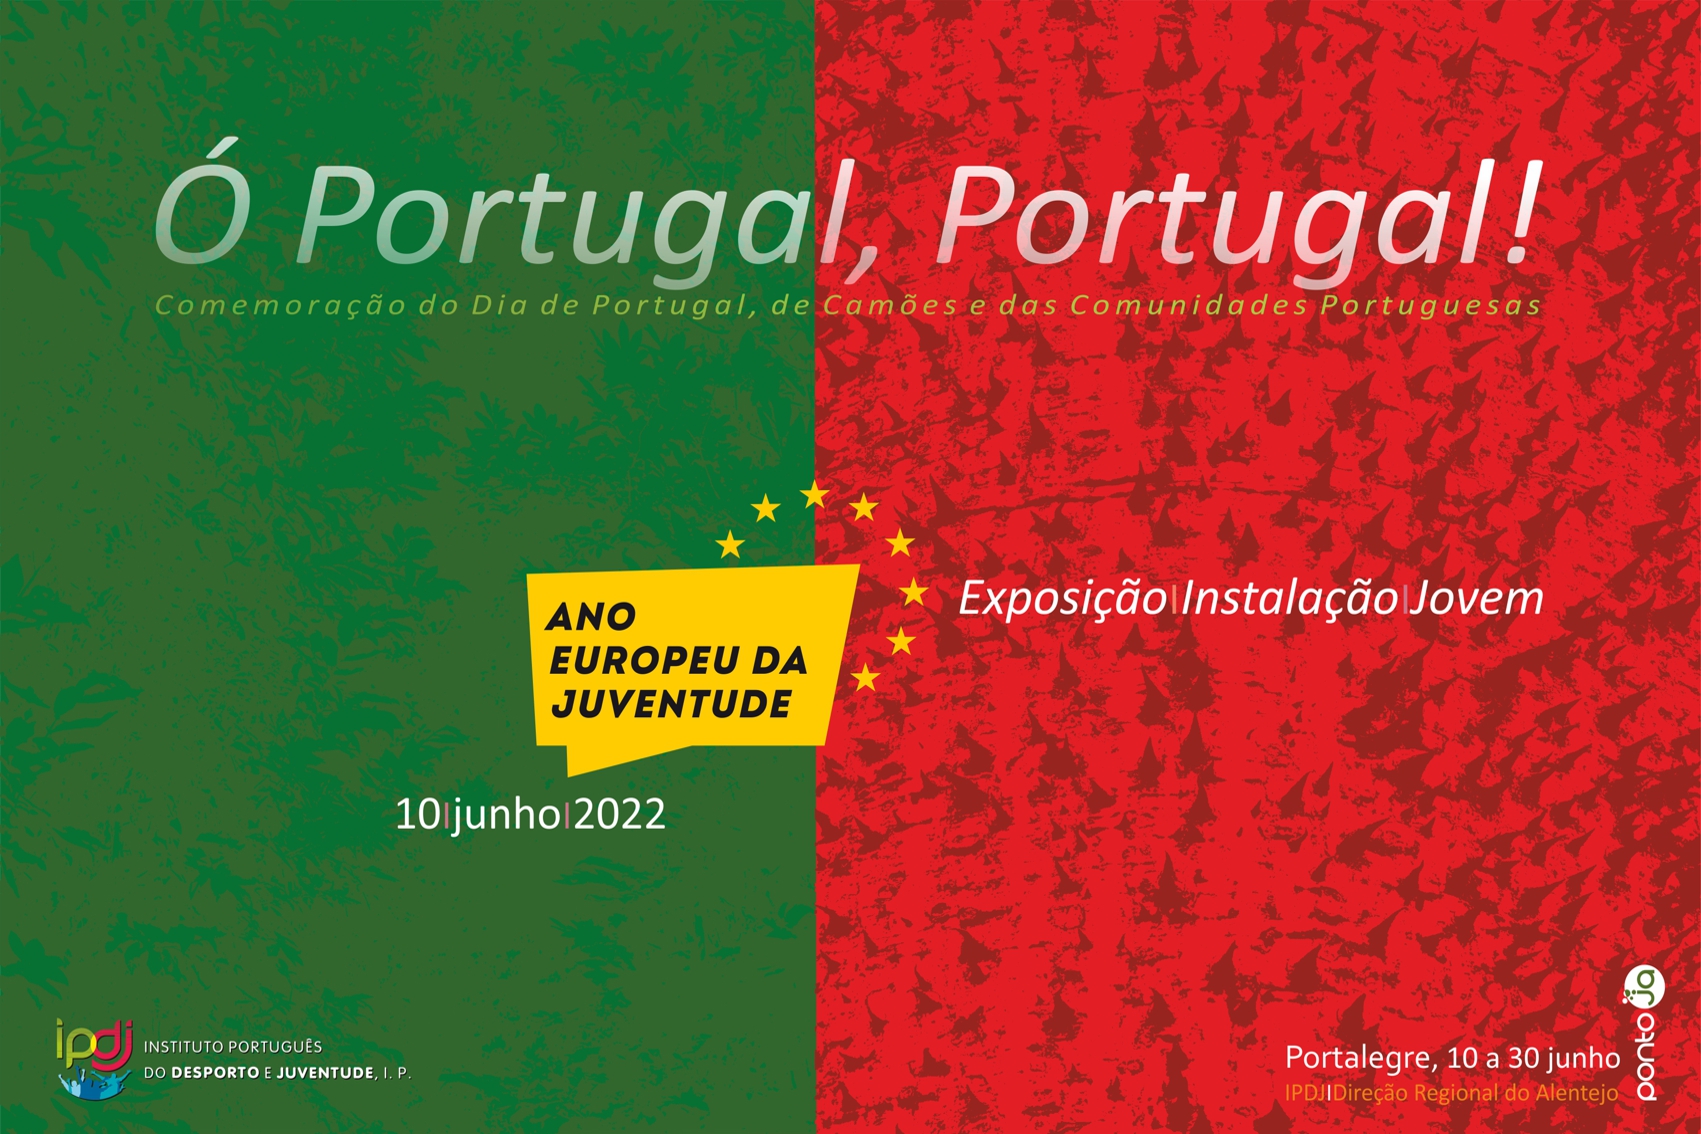 Imagem em verde e vermelho como a bandeira de Portugal, com o logo do Ano Europeu da Juventude, no centro em amarelo.